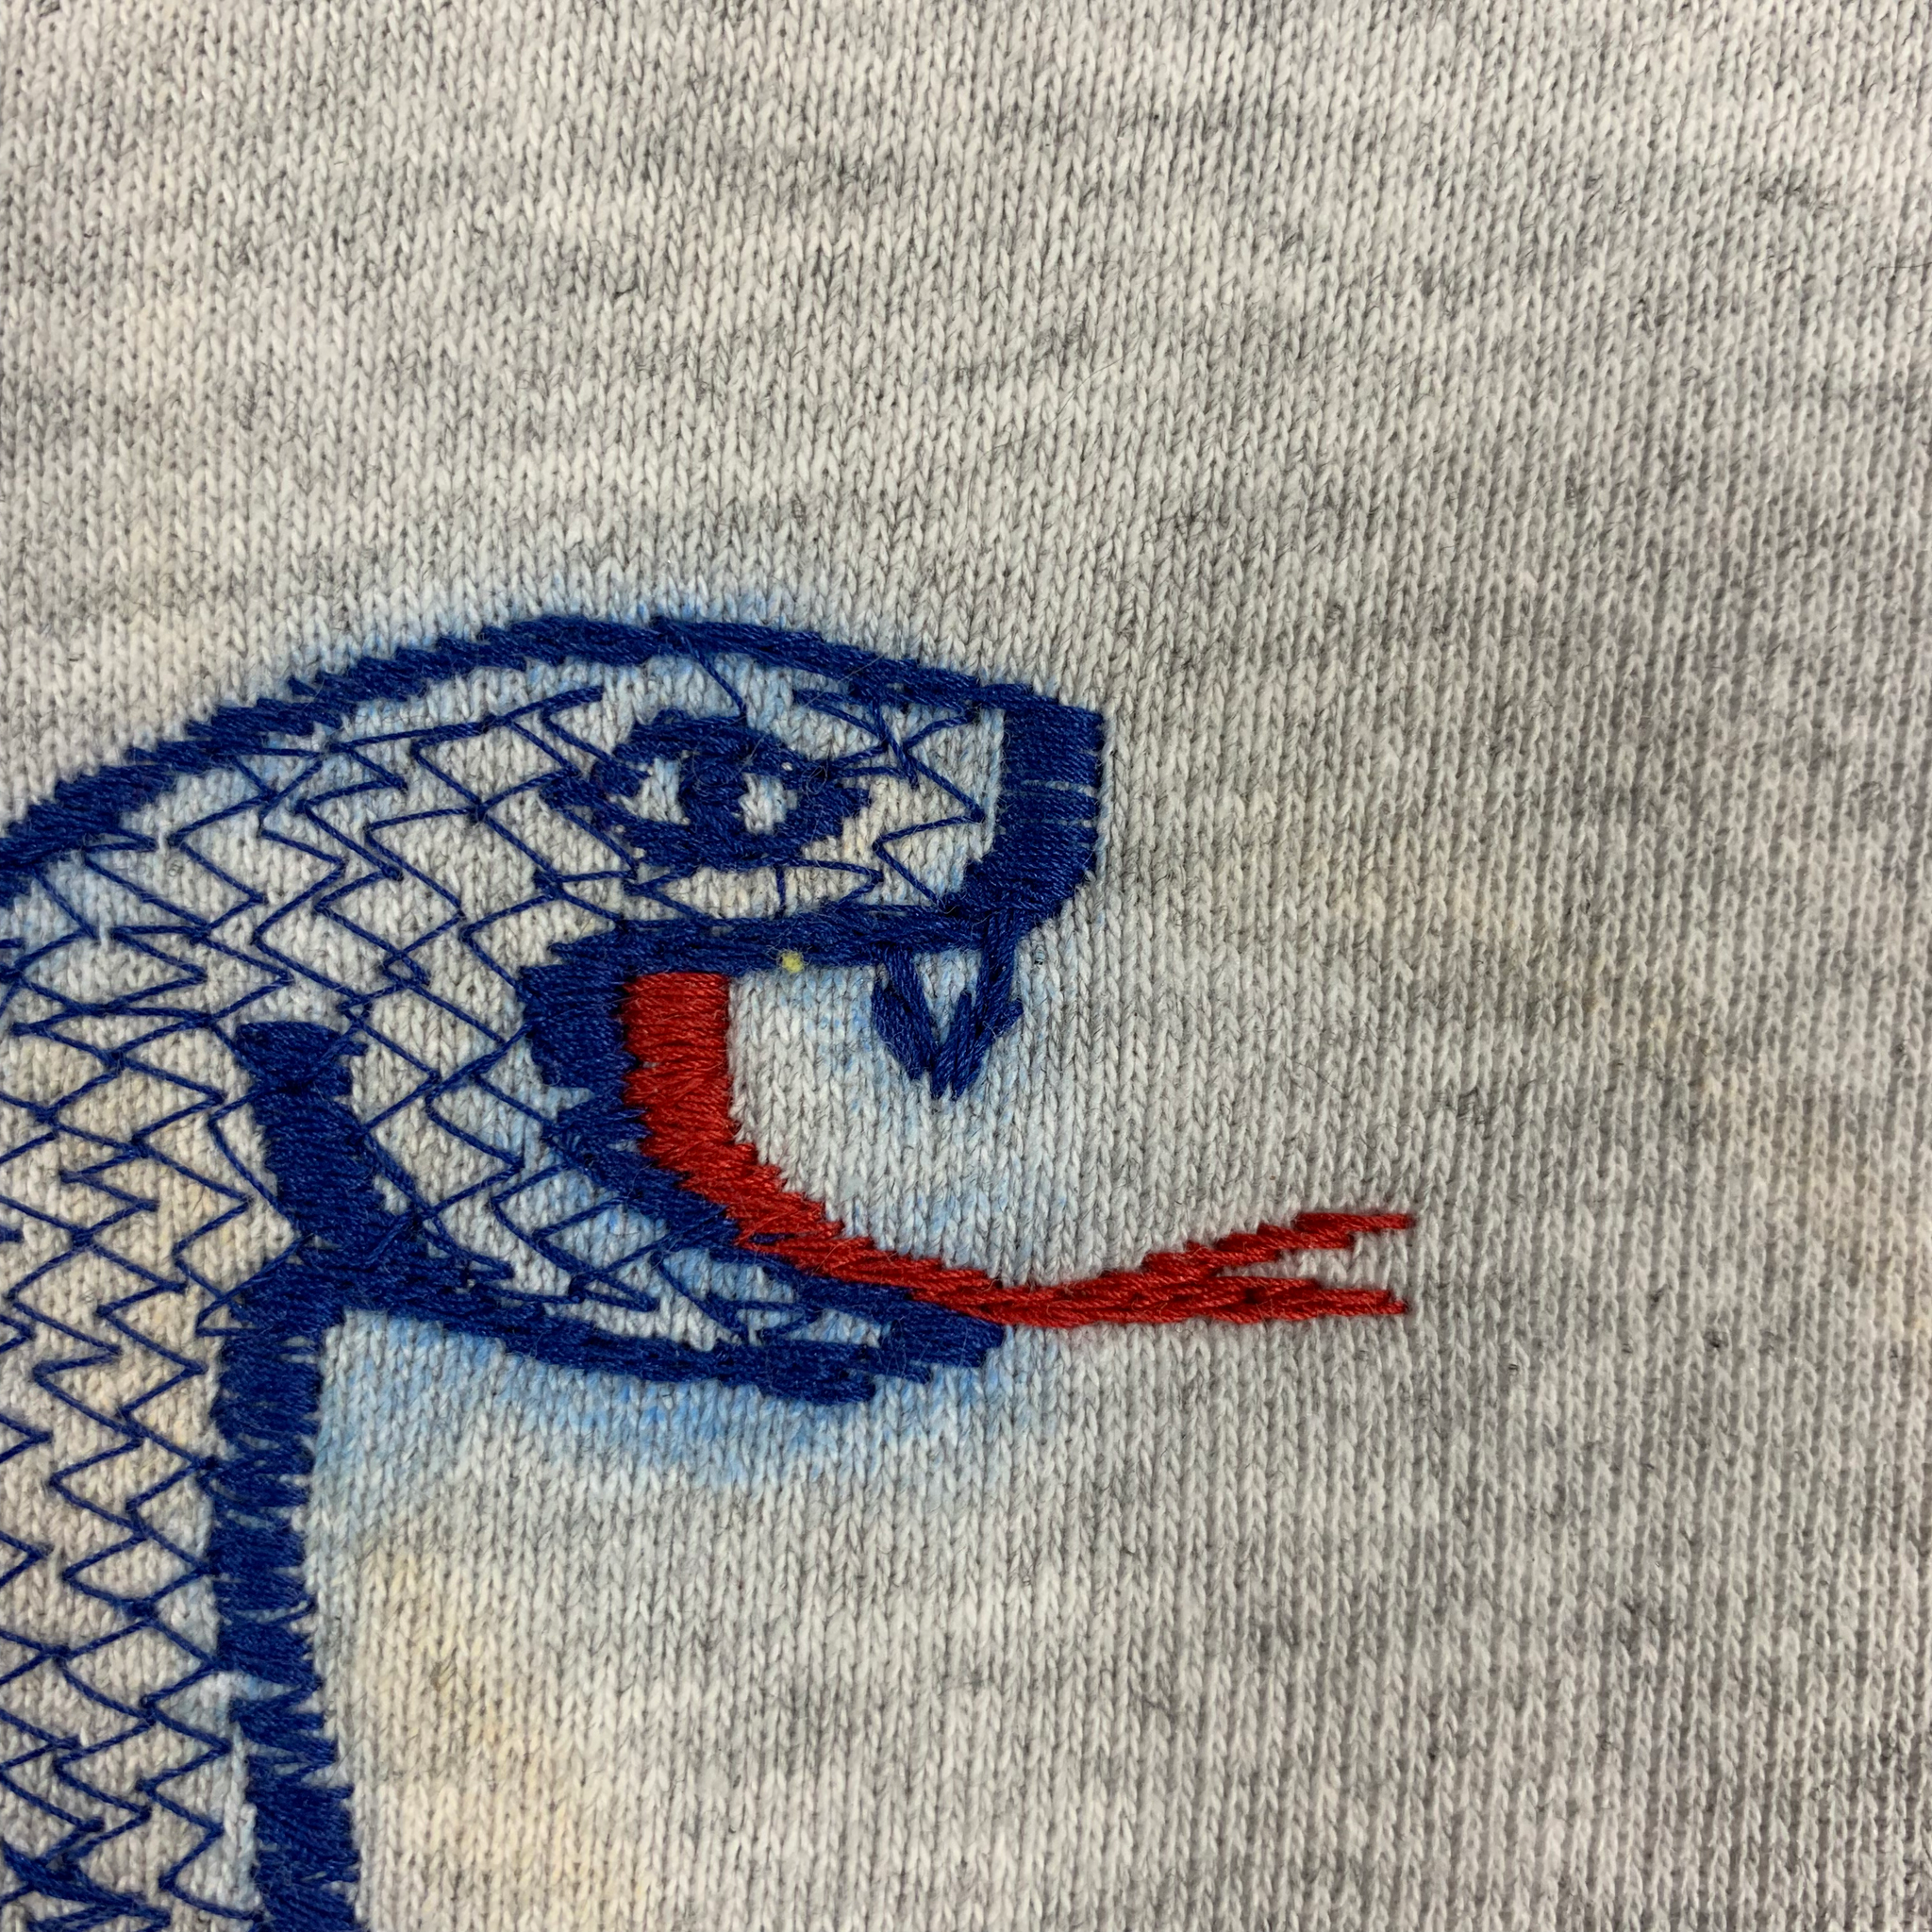 Embroidered Hoodie - Medium